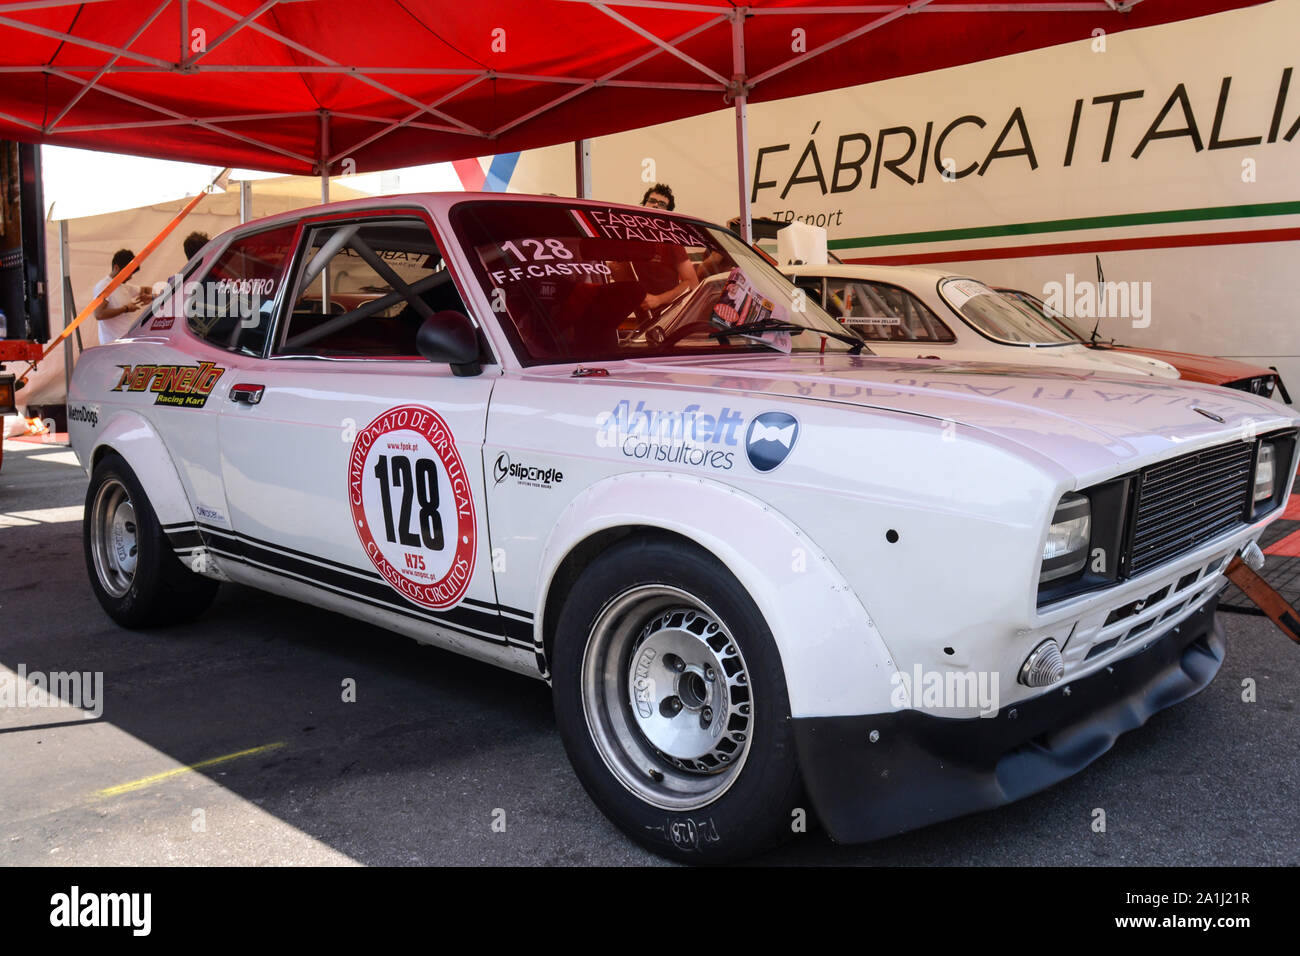 Fiat 128 racing car Stock Photo